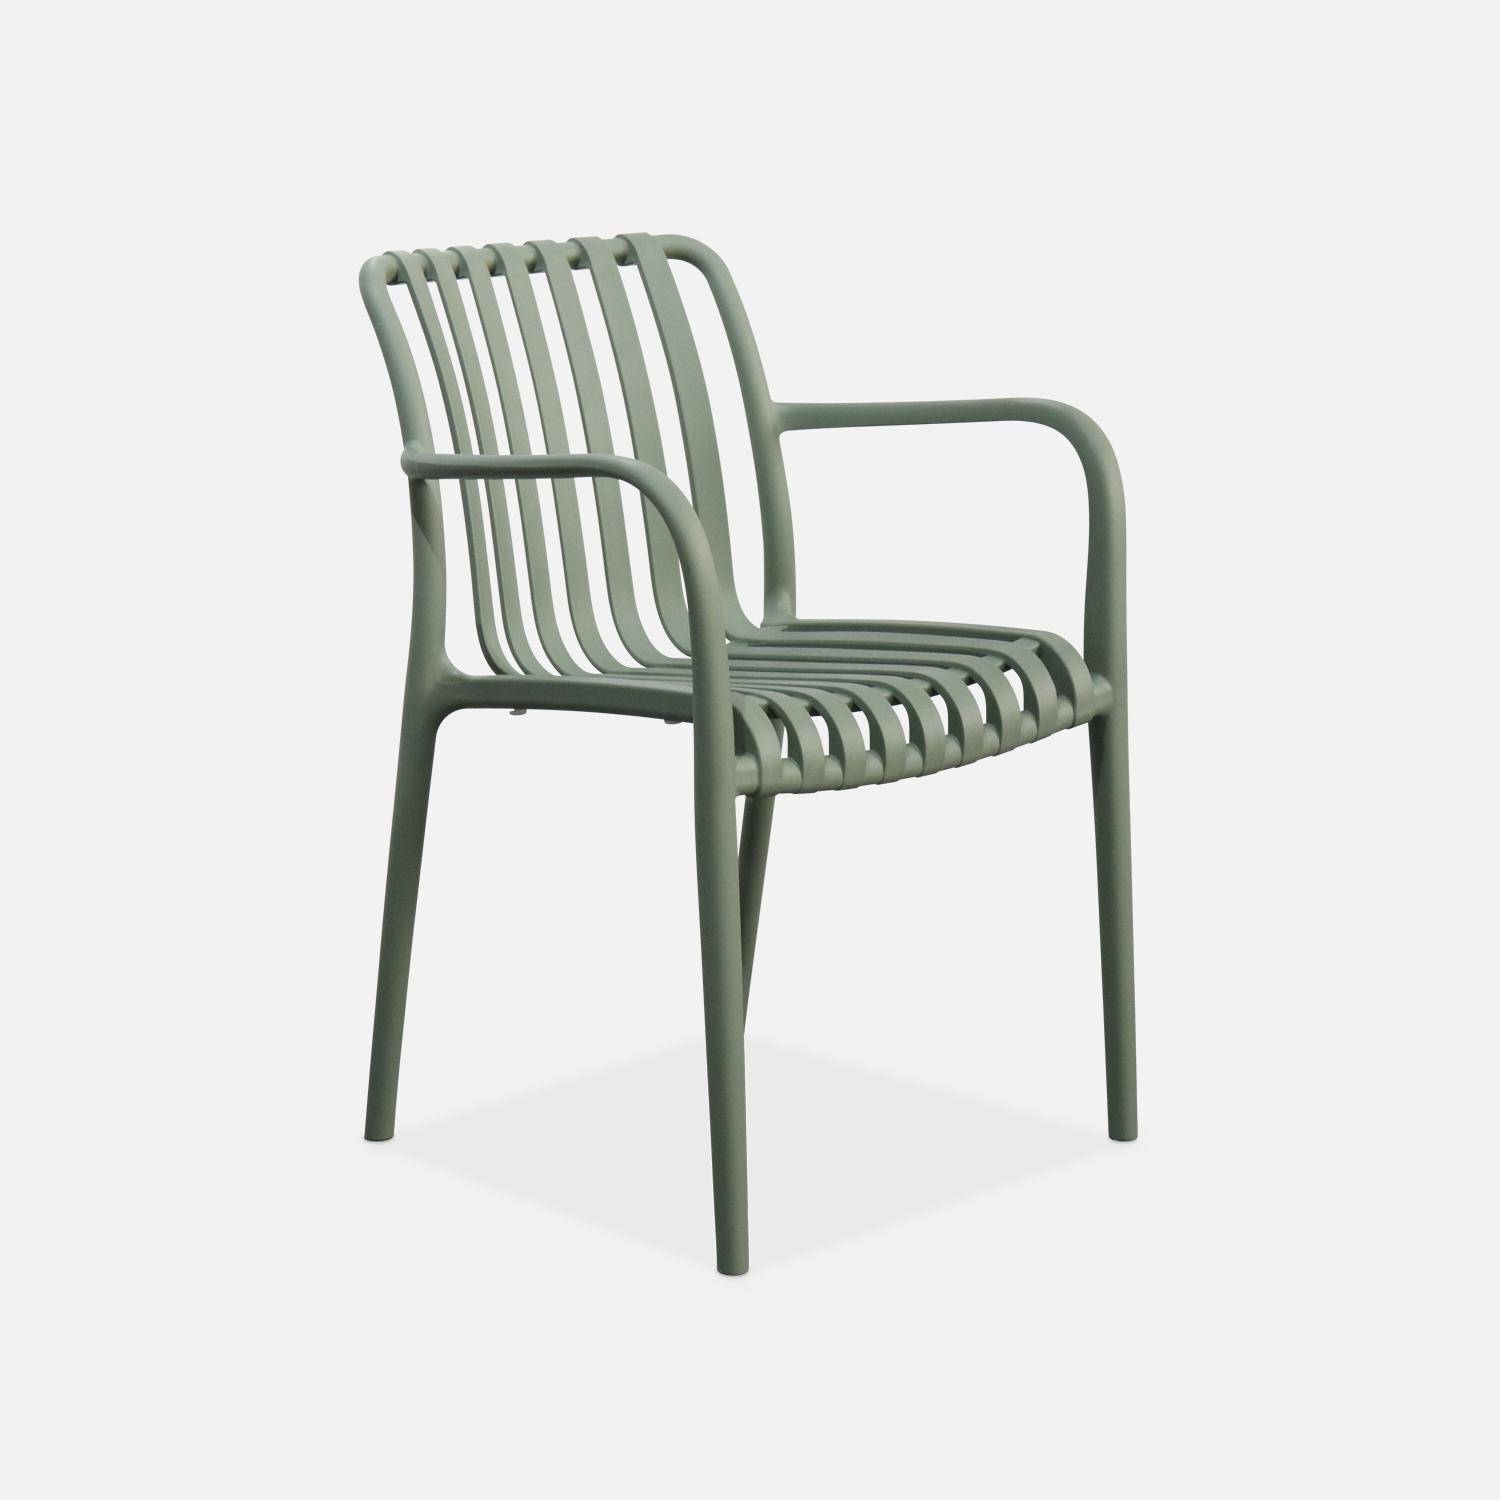 Lot de 4 fauteuils de jardin en plastique vert de gris, empilables, design linéaire  Photo2